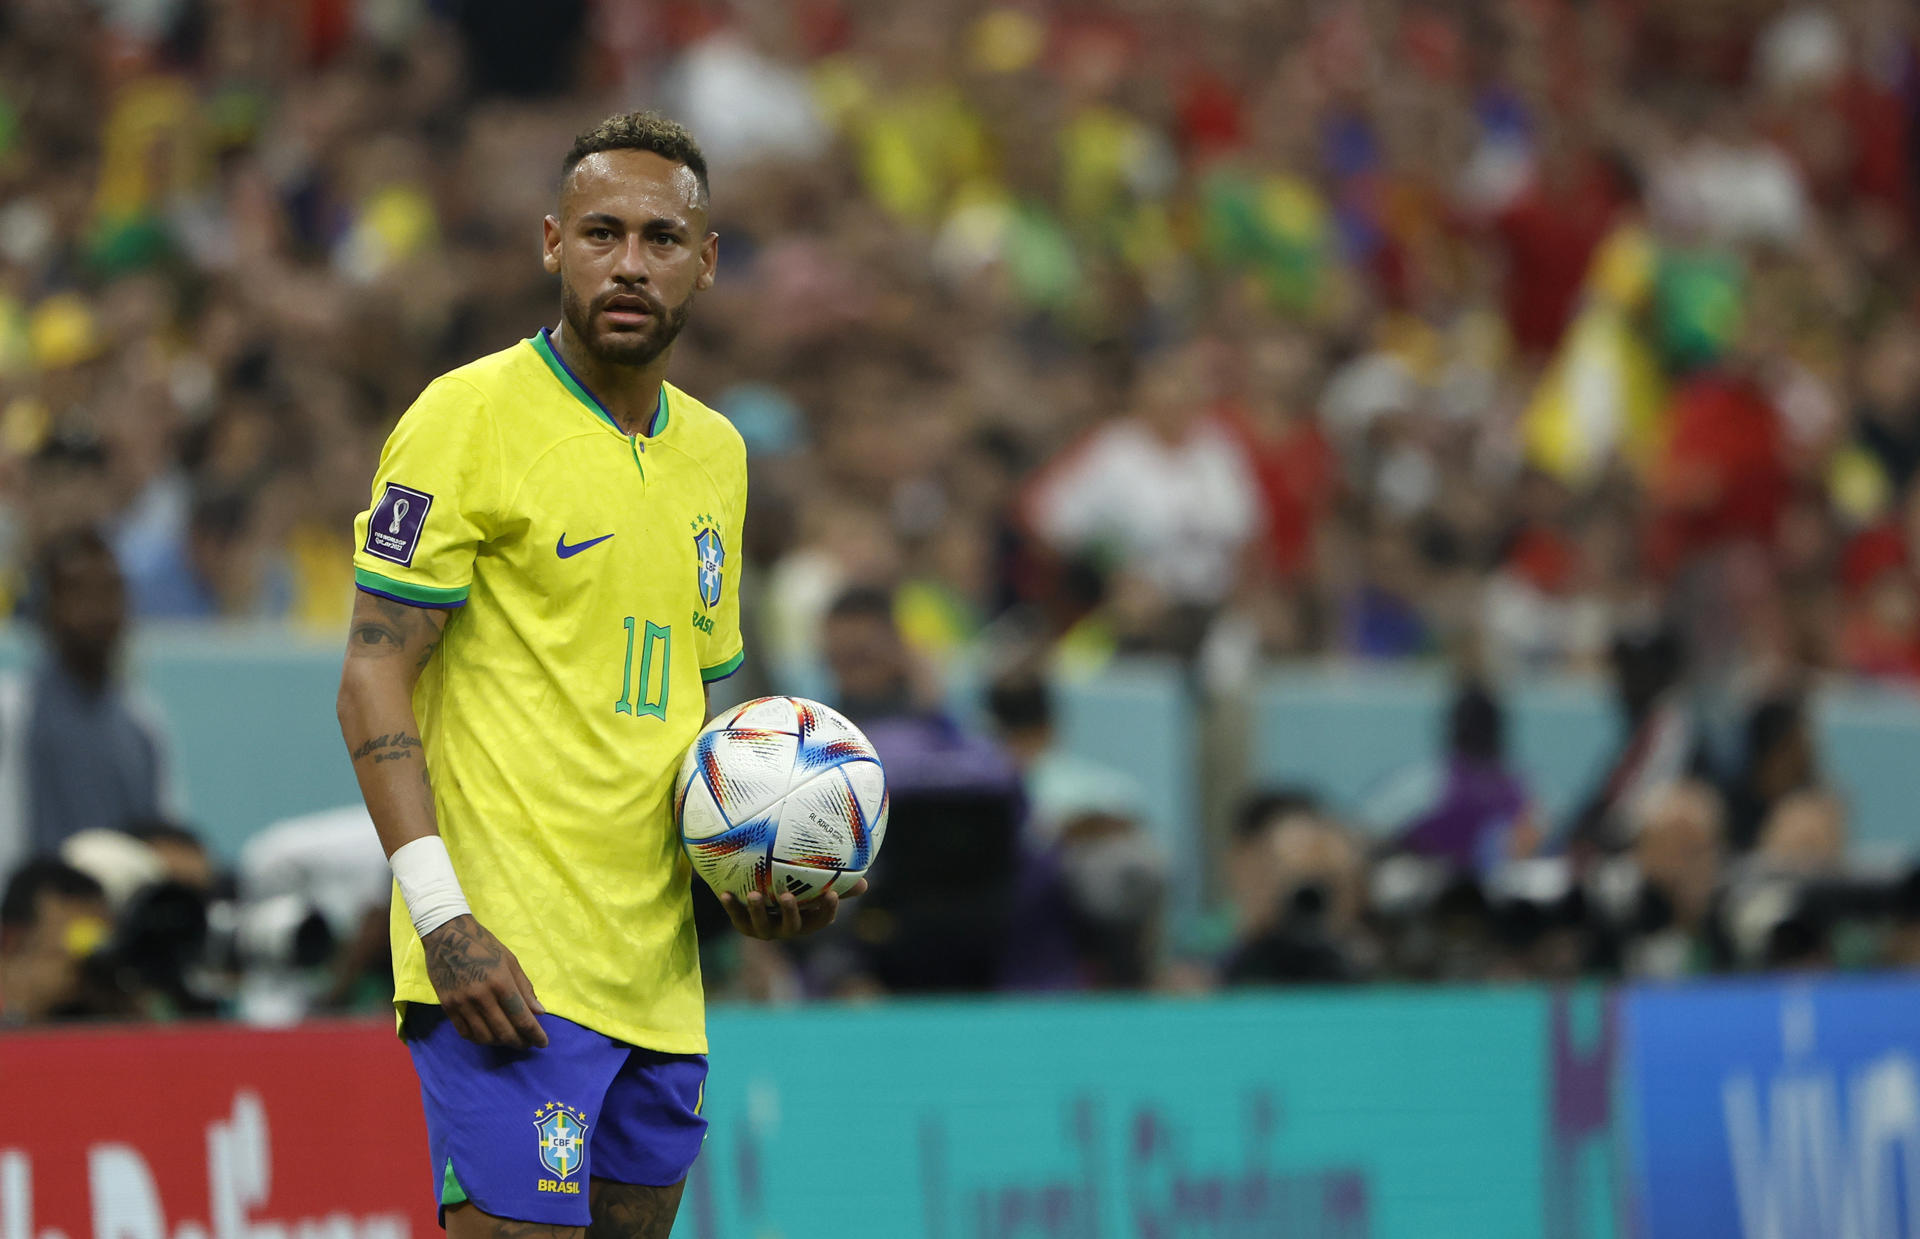 Recuperan un balón autografiado por Neymar robado en el ataque golpista en Brasil